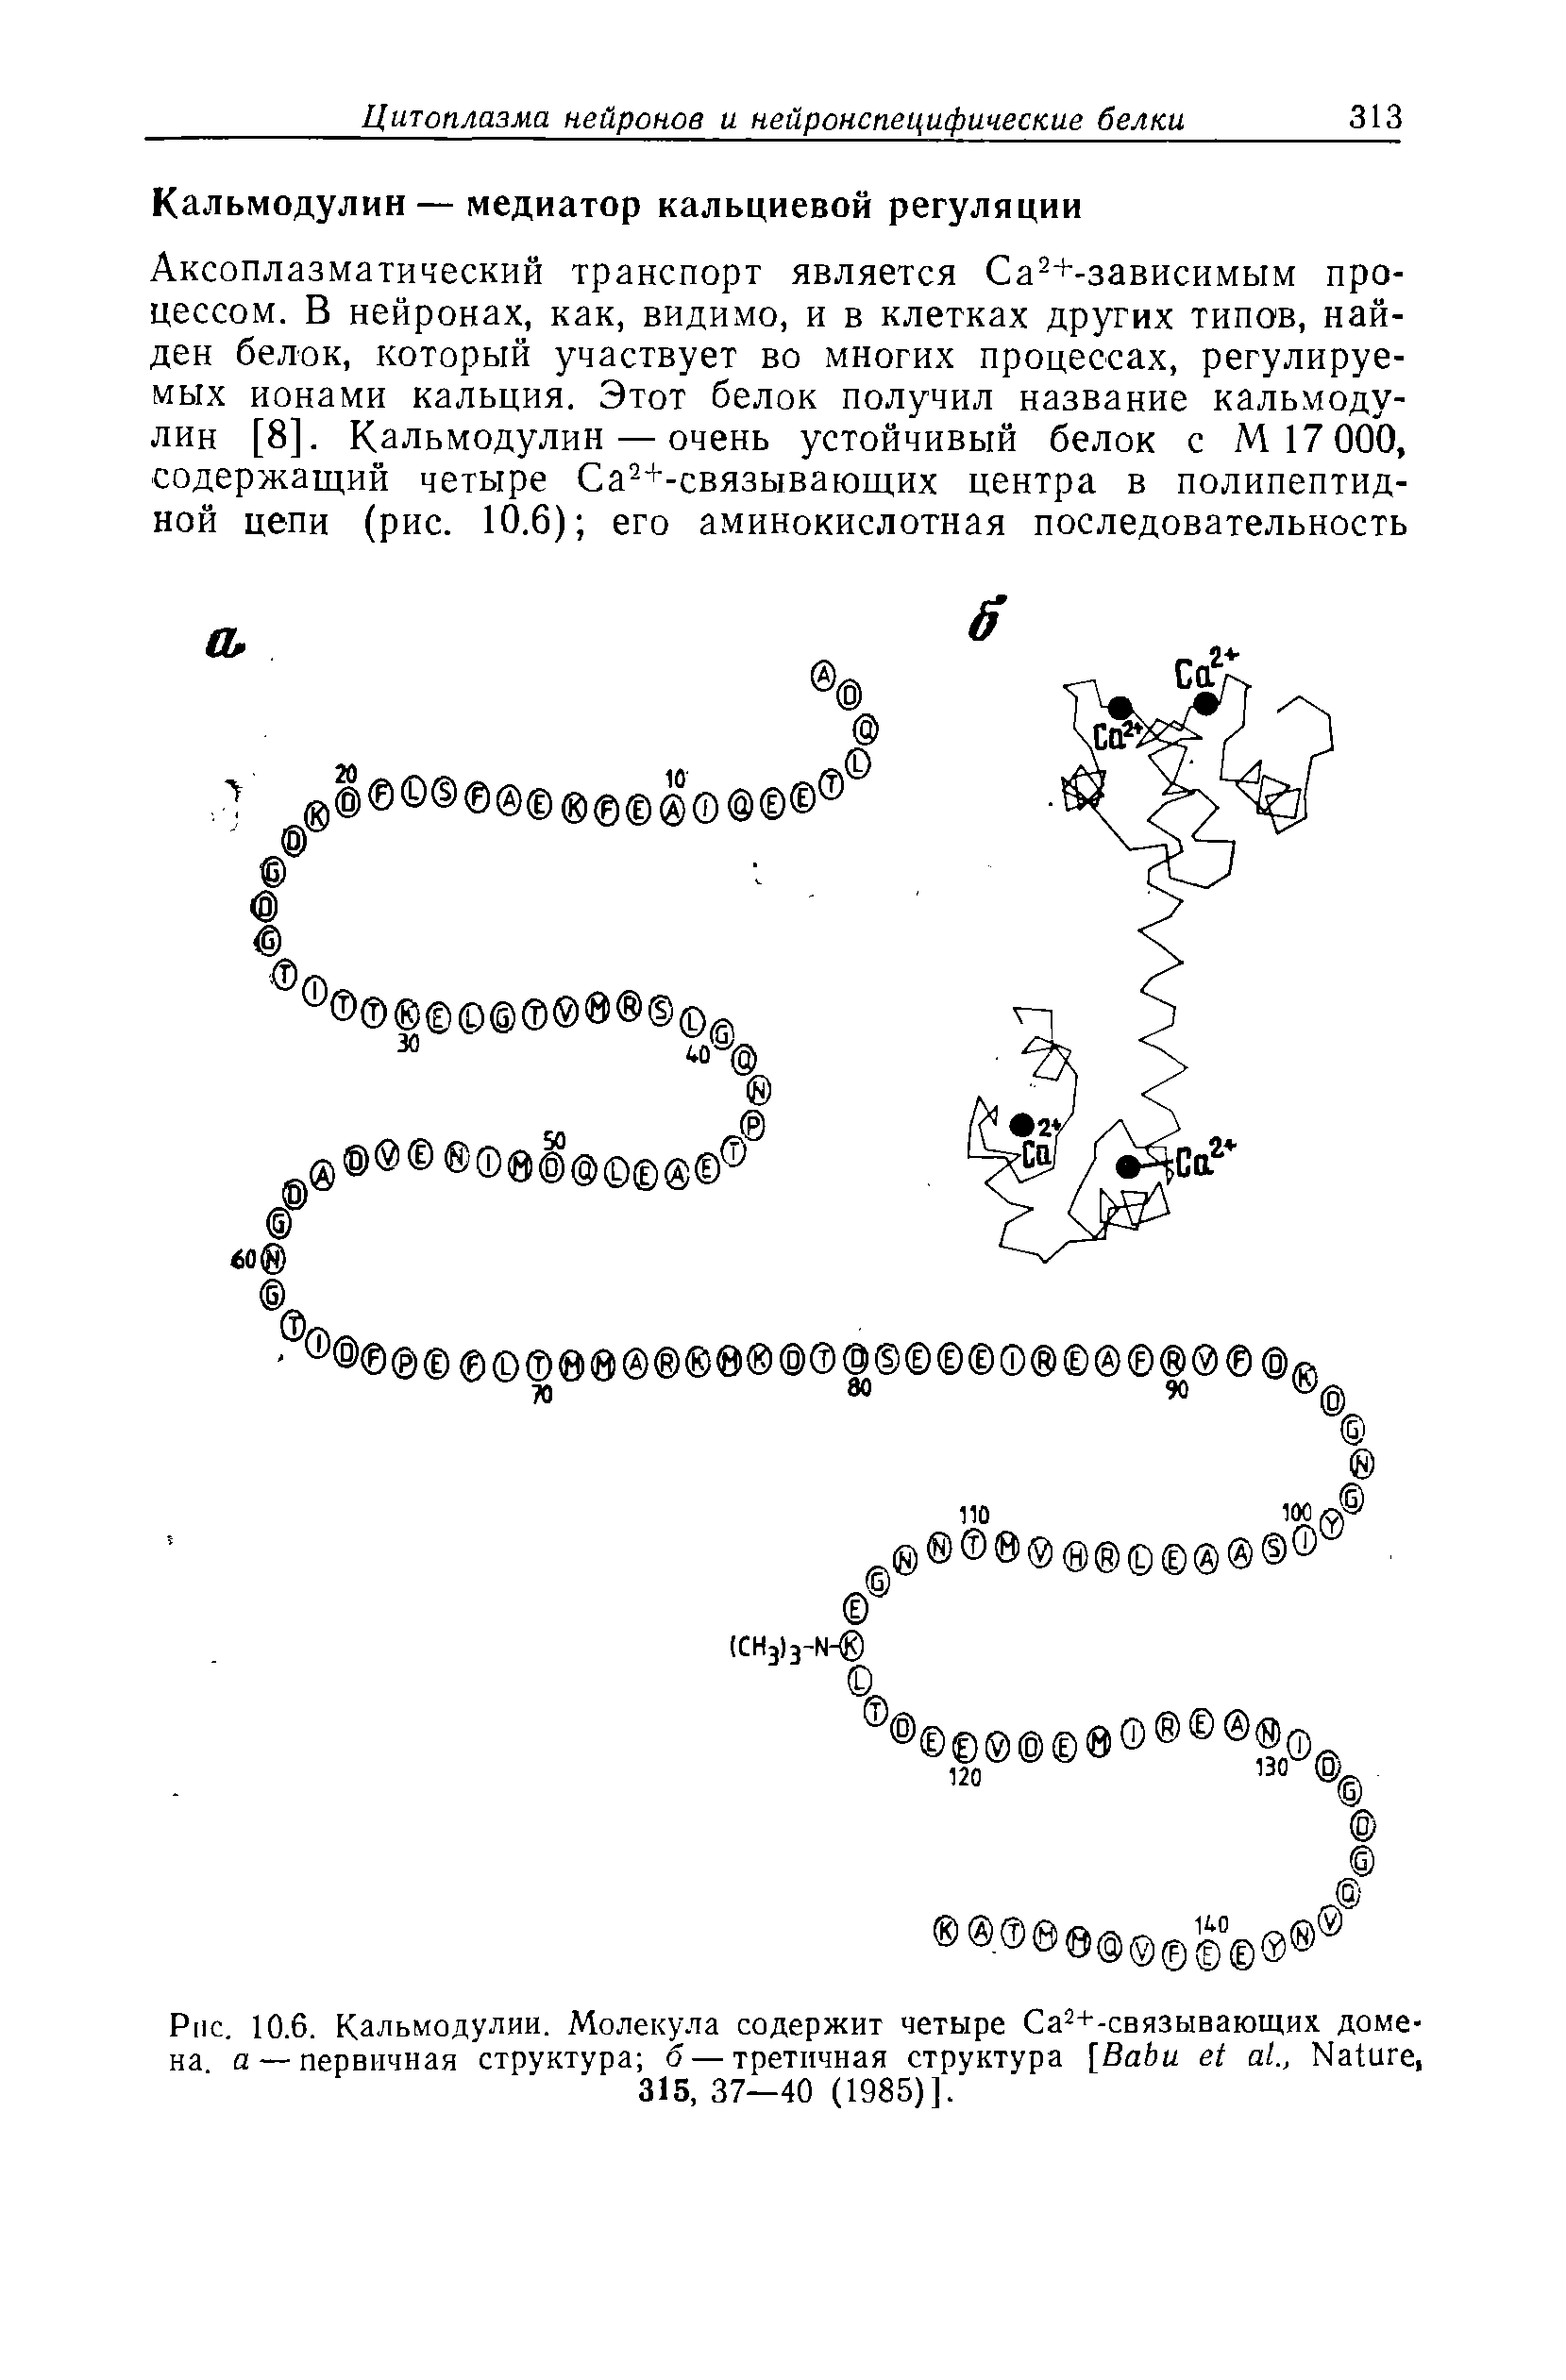 Рис. 10.6. Кальмодулин. Молекула содержит четыре Са2+-связывающих домена а — первичная структура б — третичная структура [B ., N , 315,37—40 (1985)].